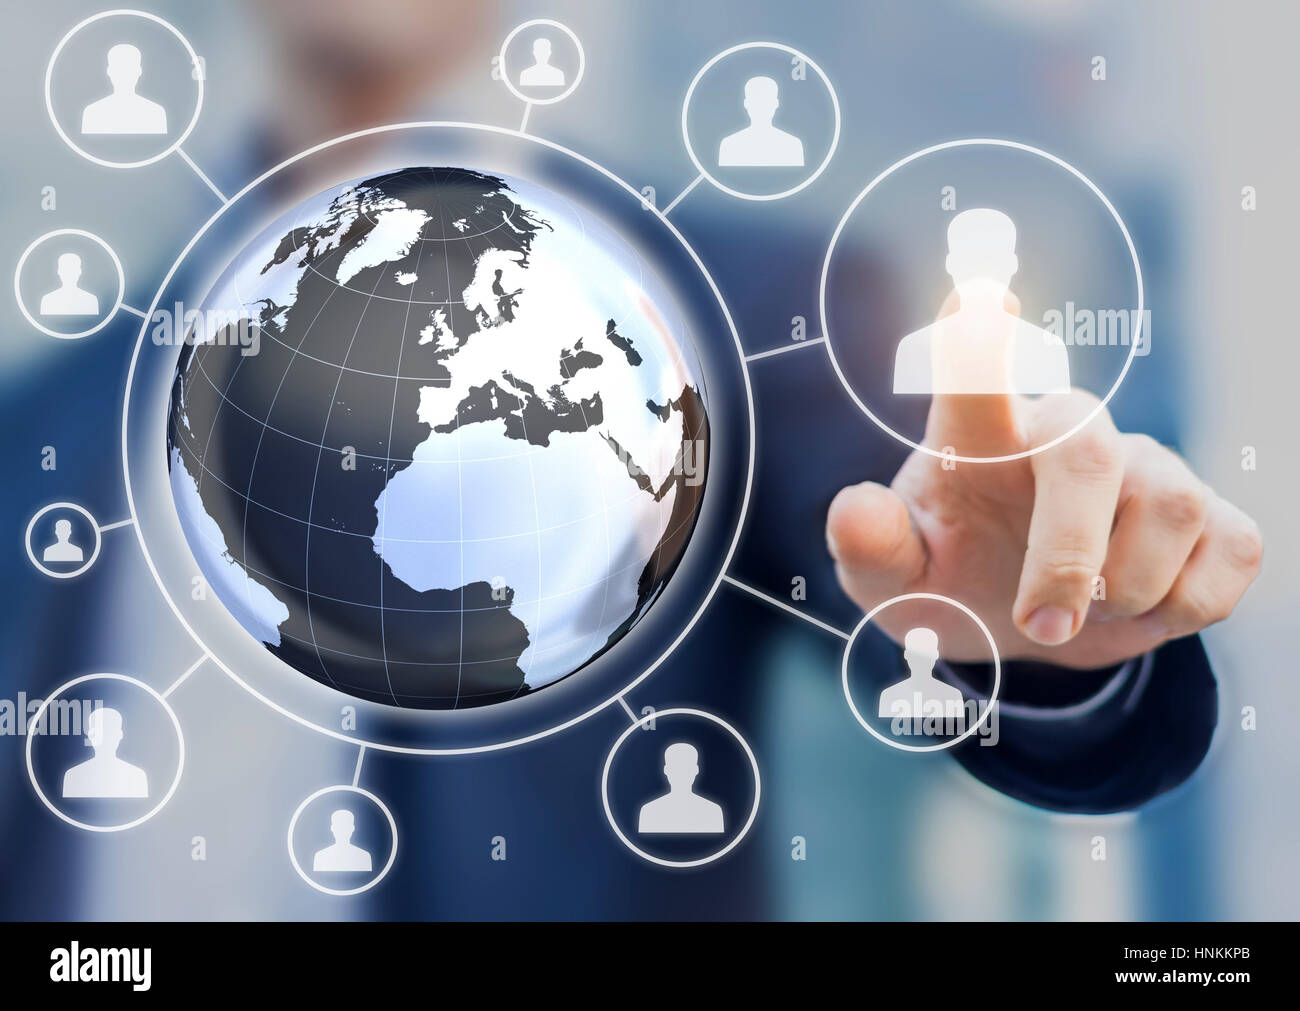 Multi-nationalen Personalwirtschaft (HR) Management-Konzept mit 3d Earth-Globus-Karte und Manager ein Kandidatenprofil auf einer virtuellen Leinwand auswählen Stockfoto